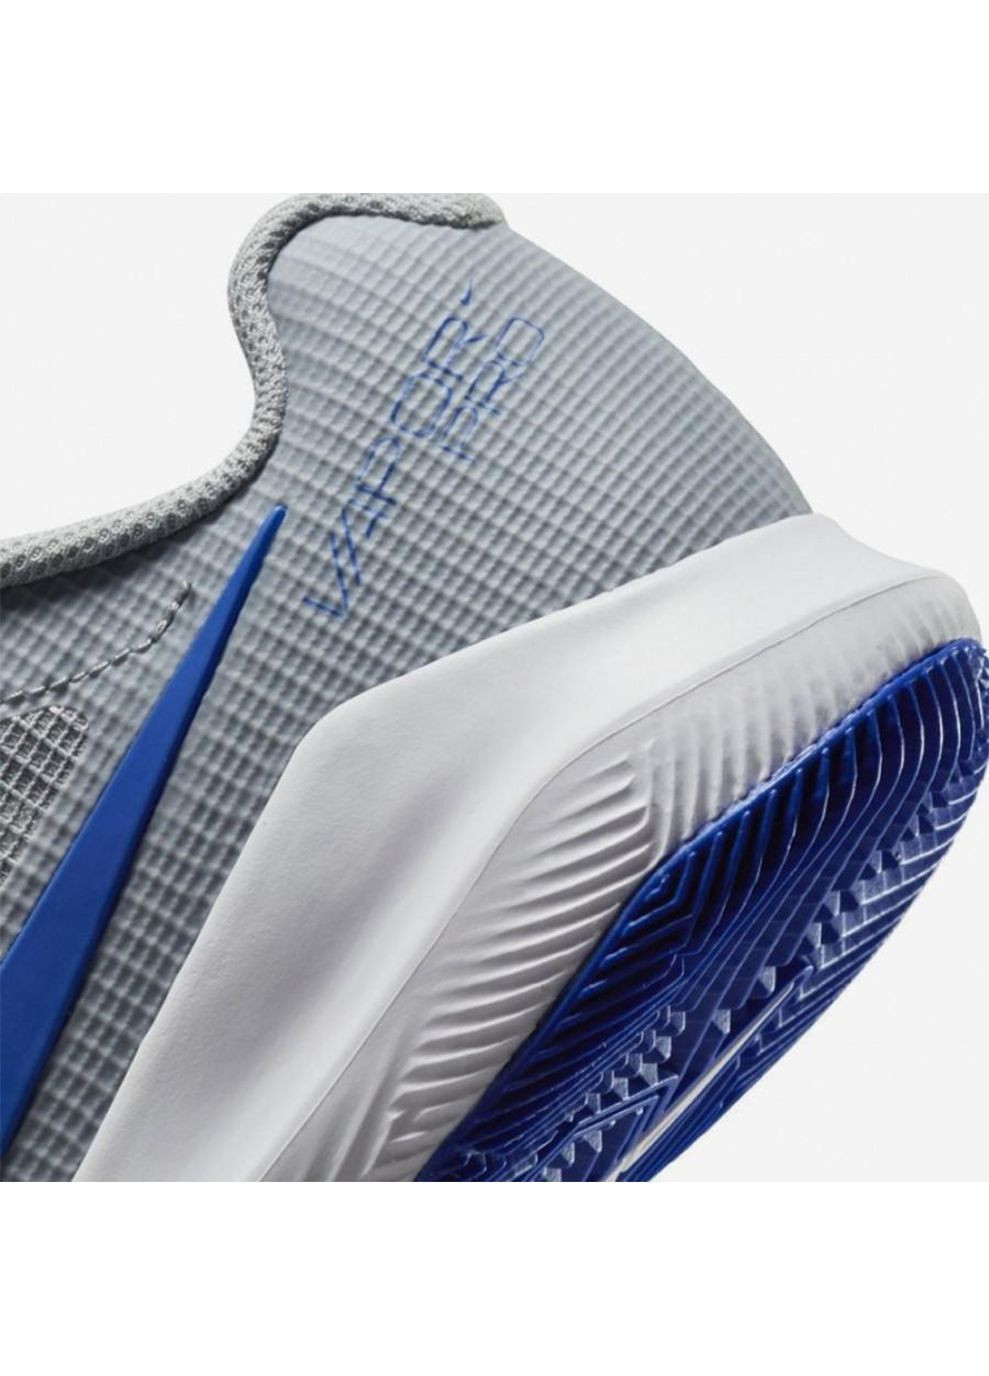 Цветные демисезонные кроссовки jr vapor pro серый синий Nike